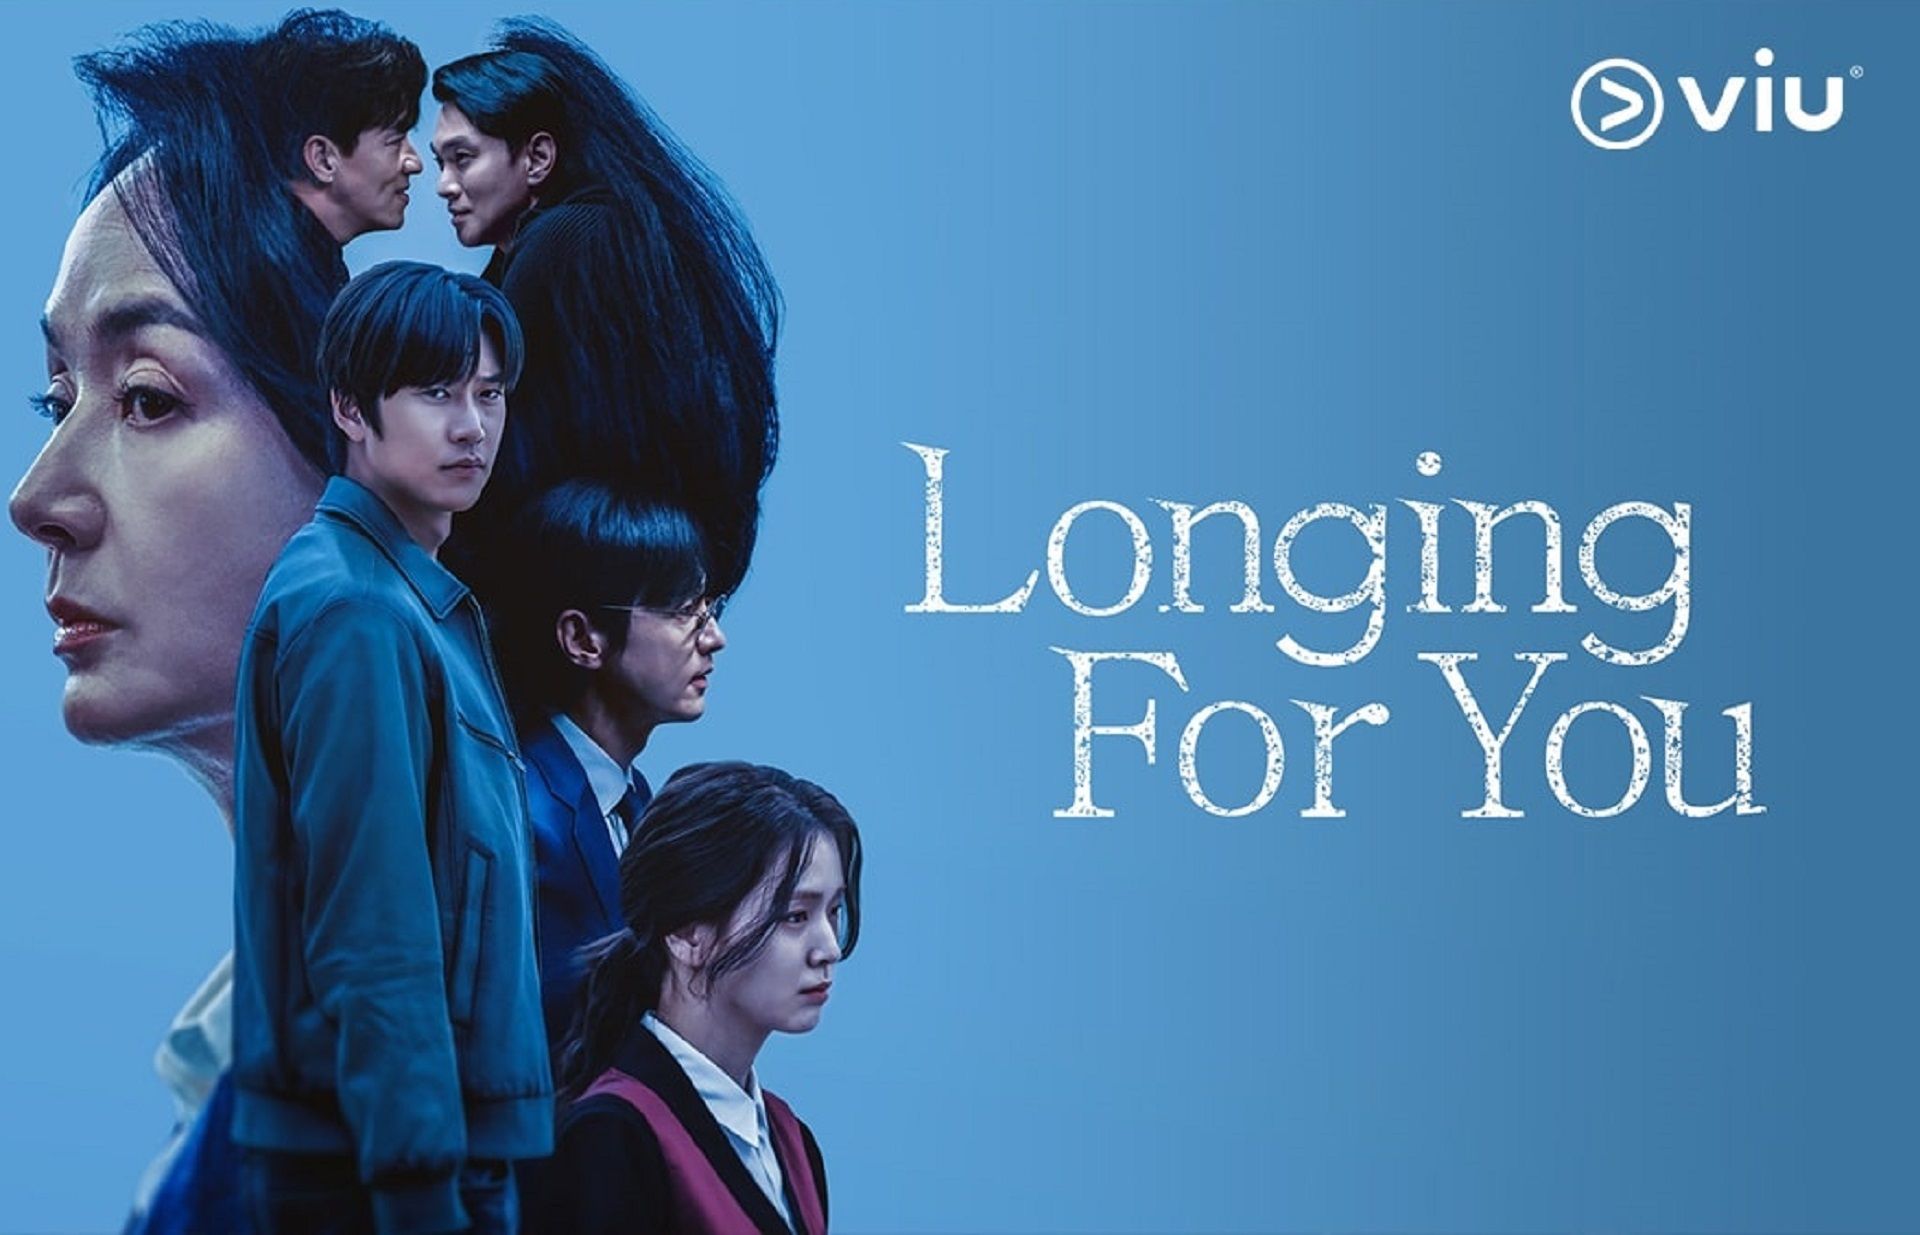 Longing for You jadi salah satu rekomendasi drama Korea di Viu.